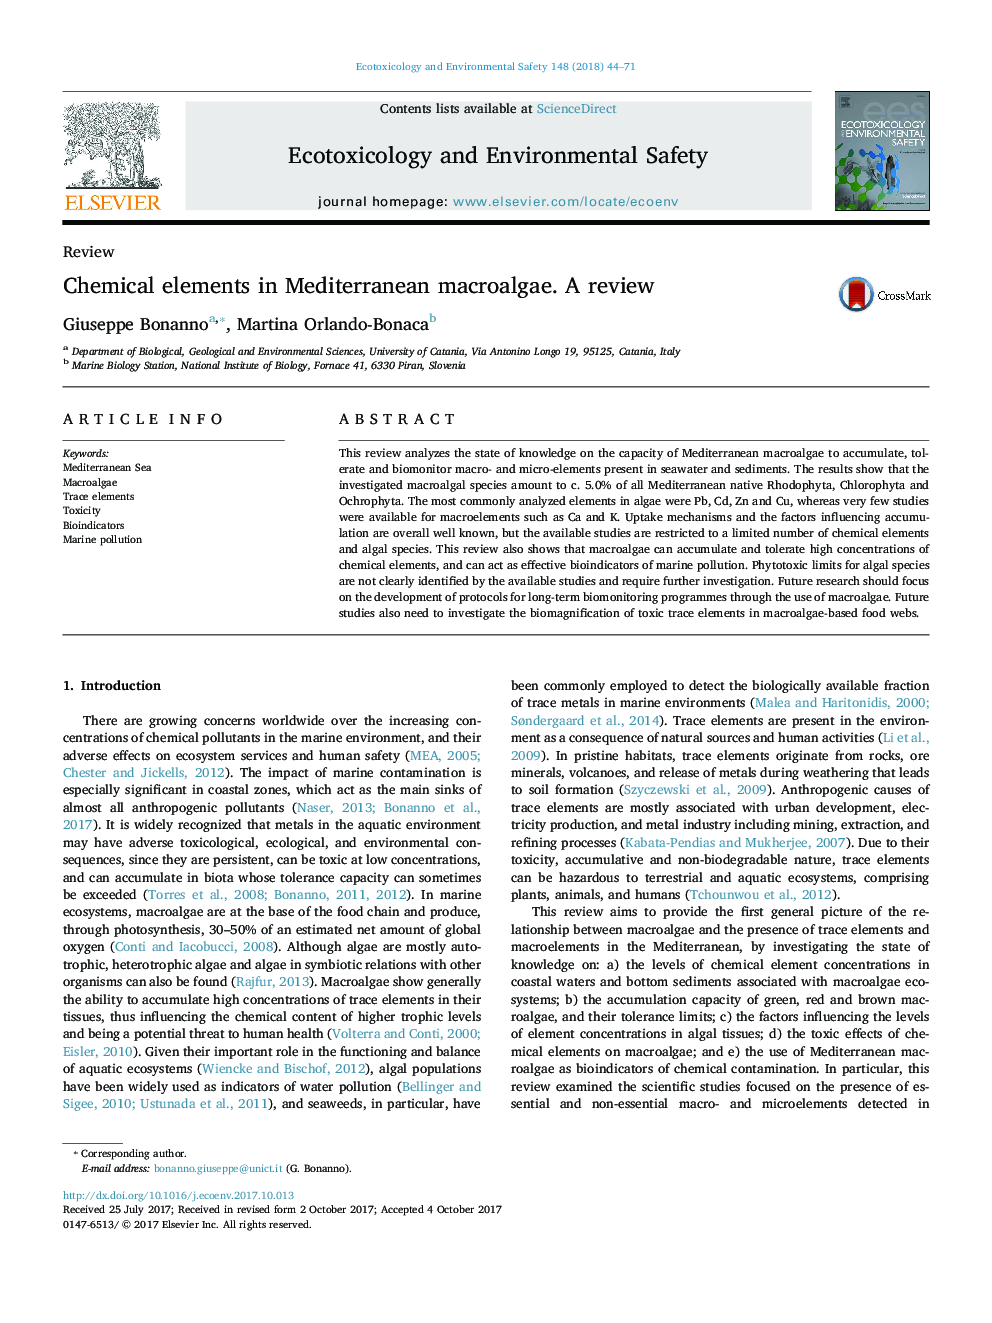 ReviewChemical elements in Mediterranean macroalgae. A review